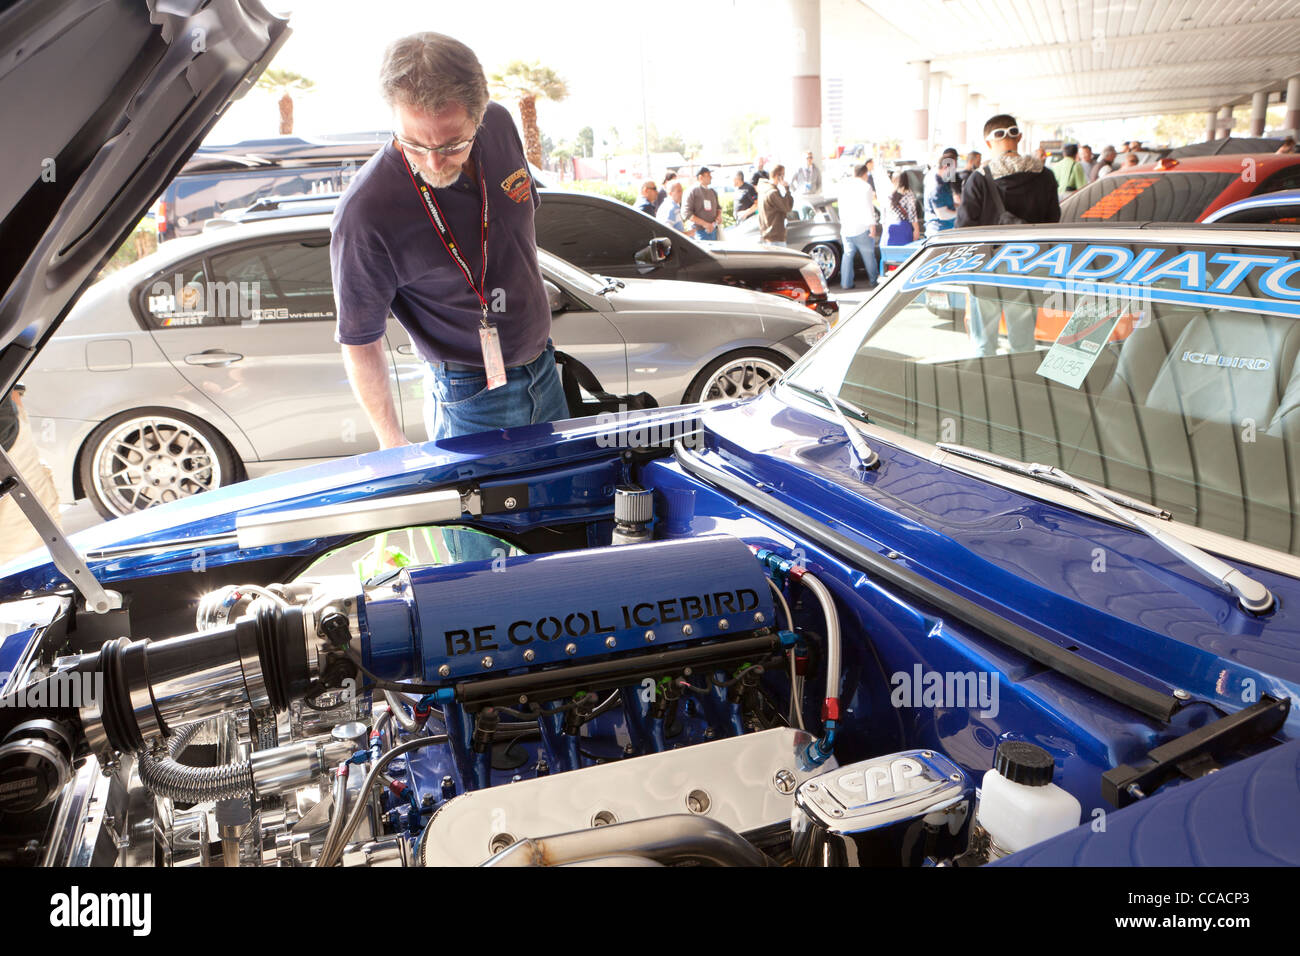 Un amateur de voiture de l'inspection d'un hot rod à moteur car show Banque D'Images